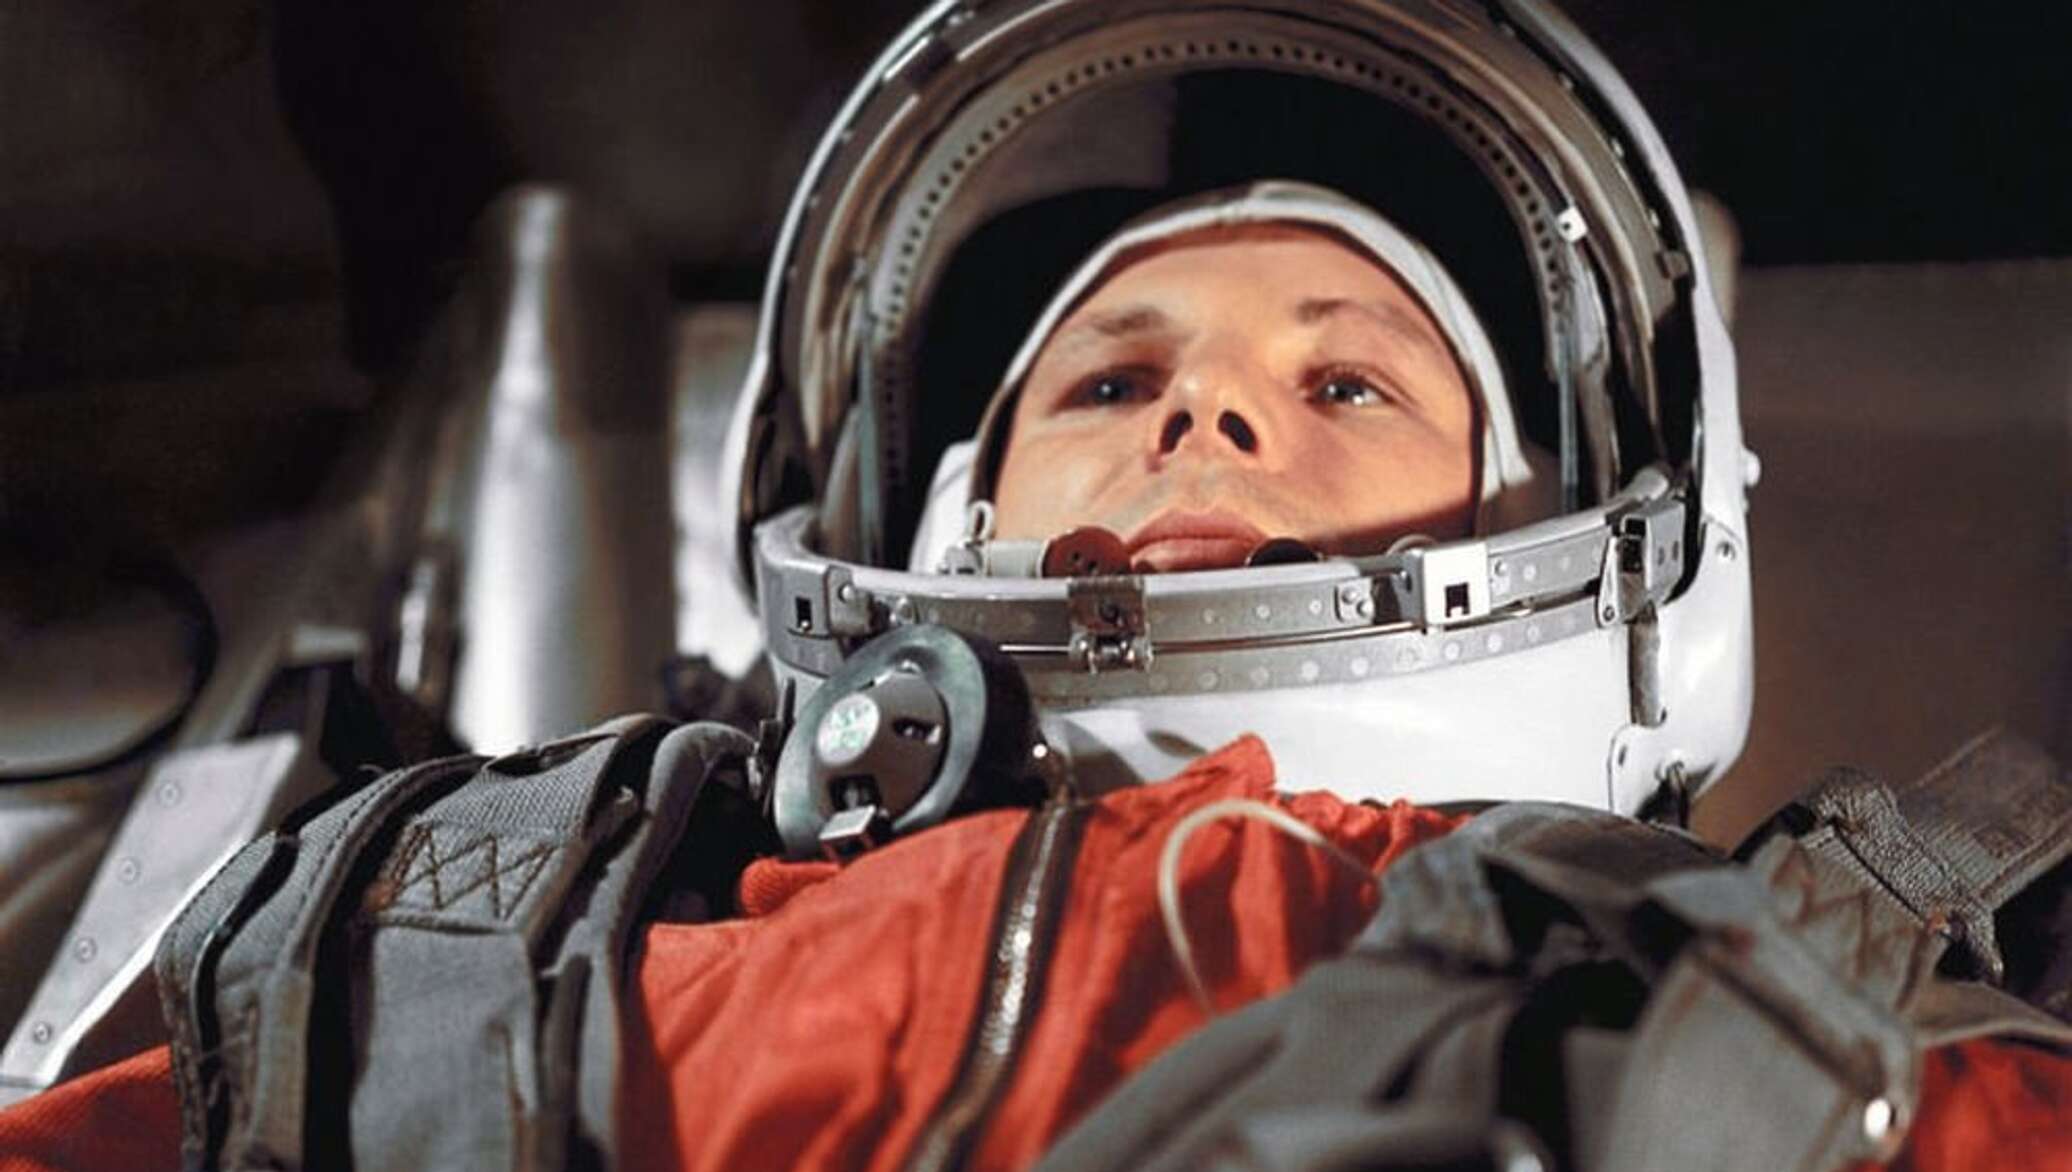 Первый полет человека в космос на корабле. Космонавт 1961 Гагарин.